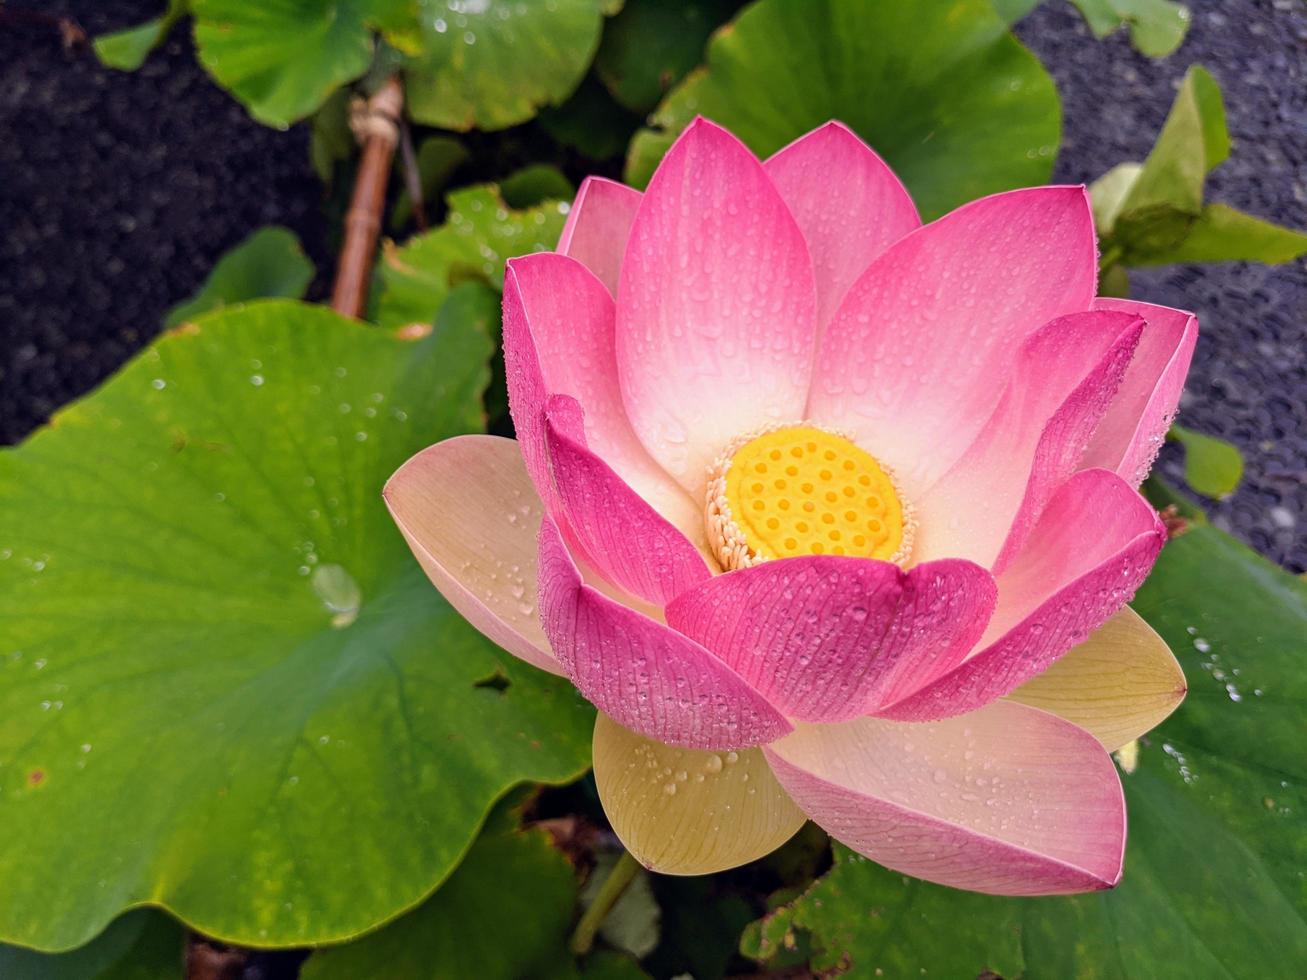 närbild av en rosa lotus foto